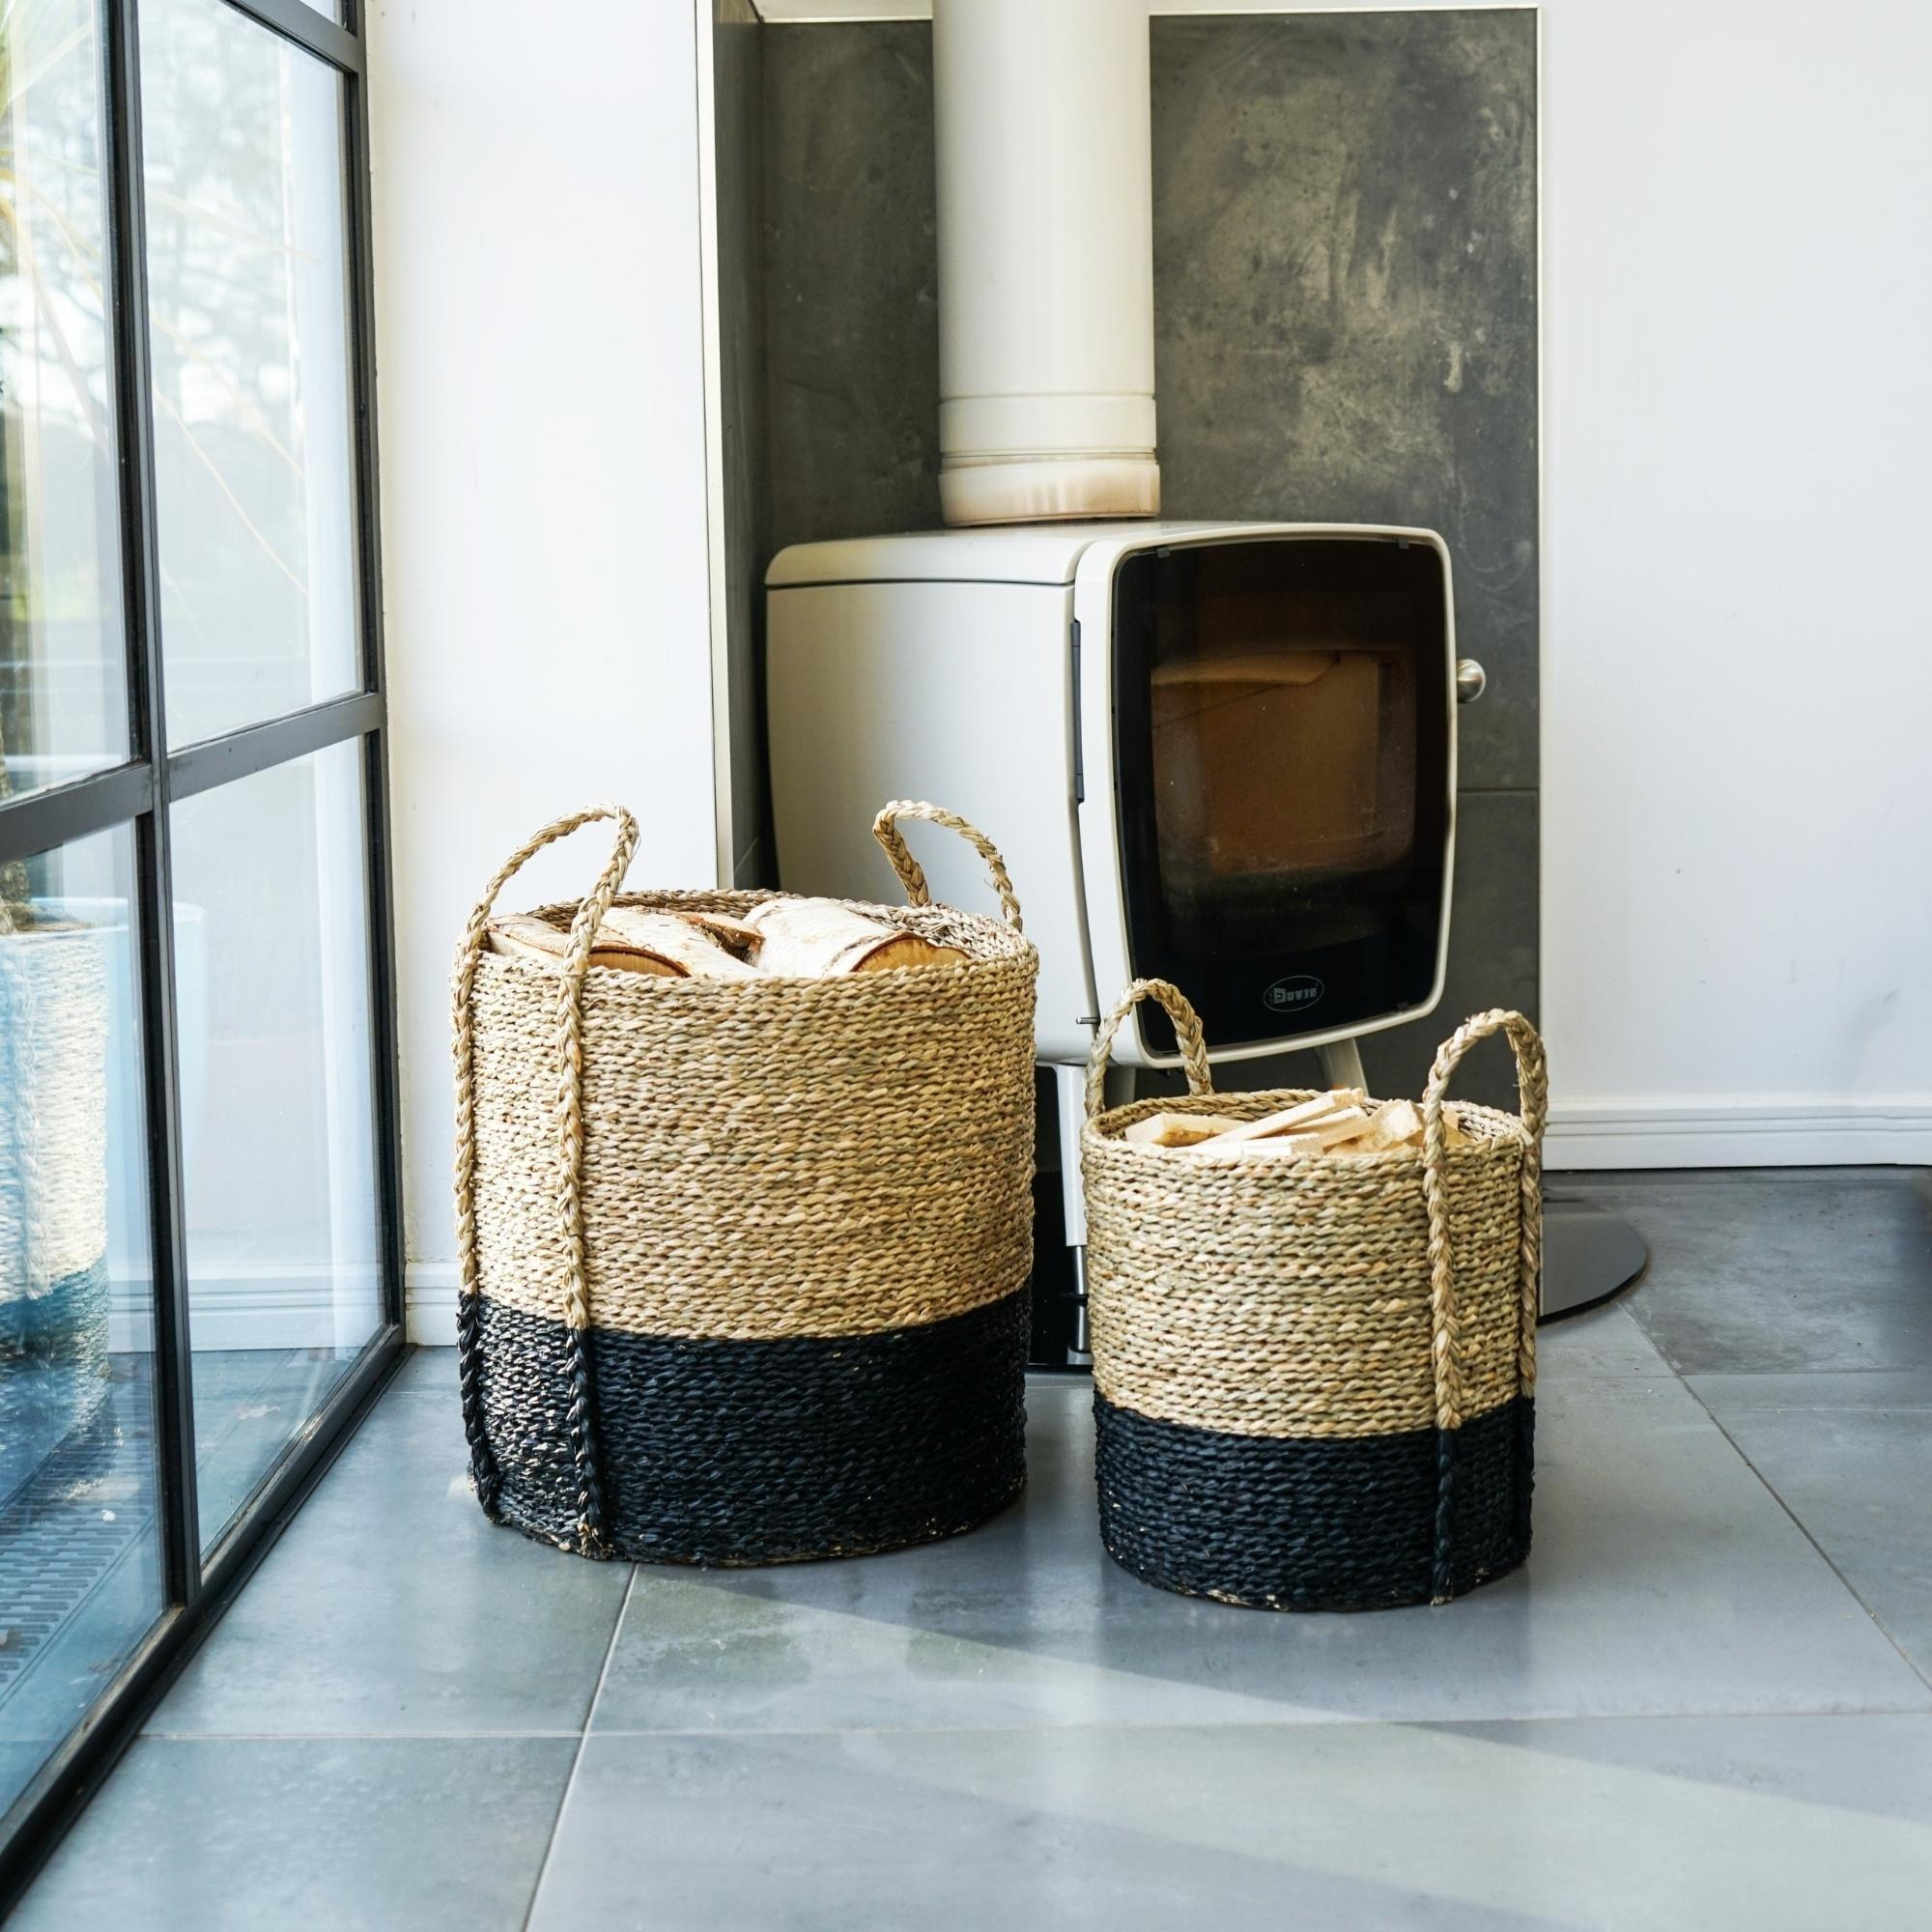 Seagrass Log & Kindling Basket, Black, Set of 2 - image 1